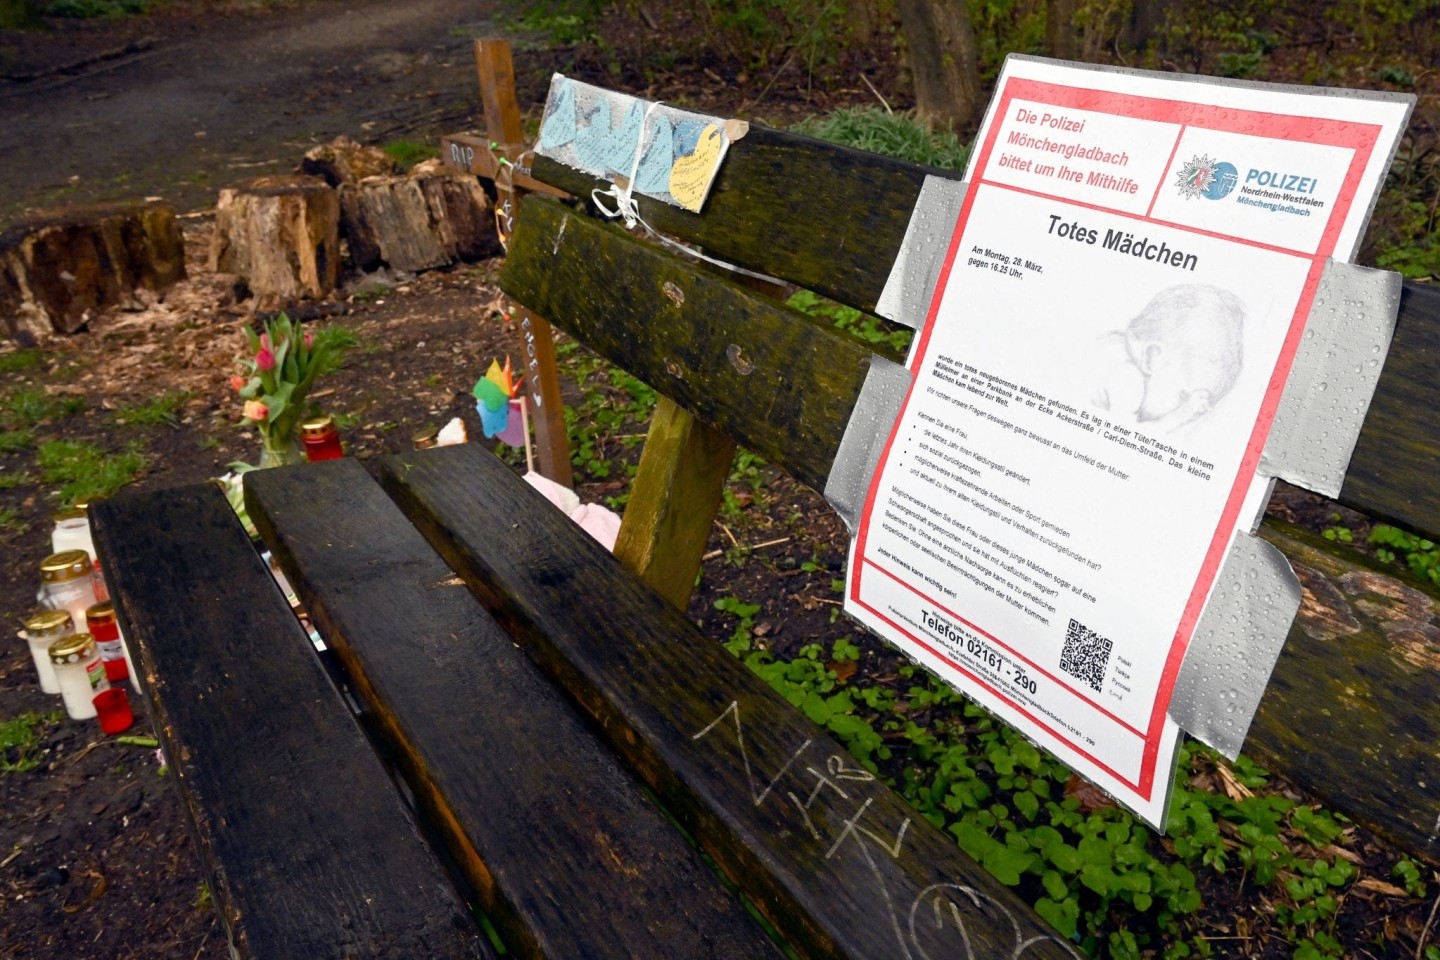 Kerzen und Stofftiere stehen an der Fundstelle eines getöteten neugeborenen Babys am Rand eines Parks in Mönchengladbach.